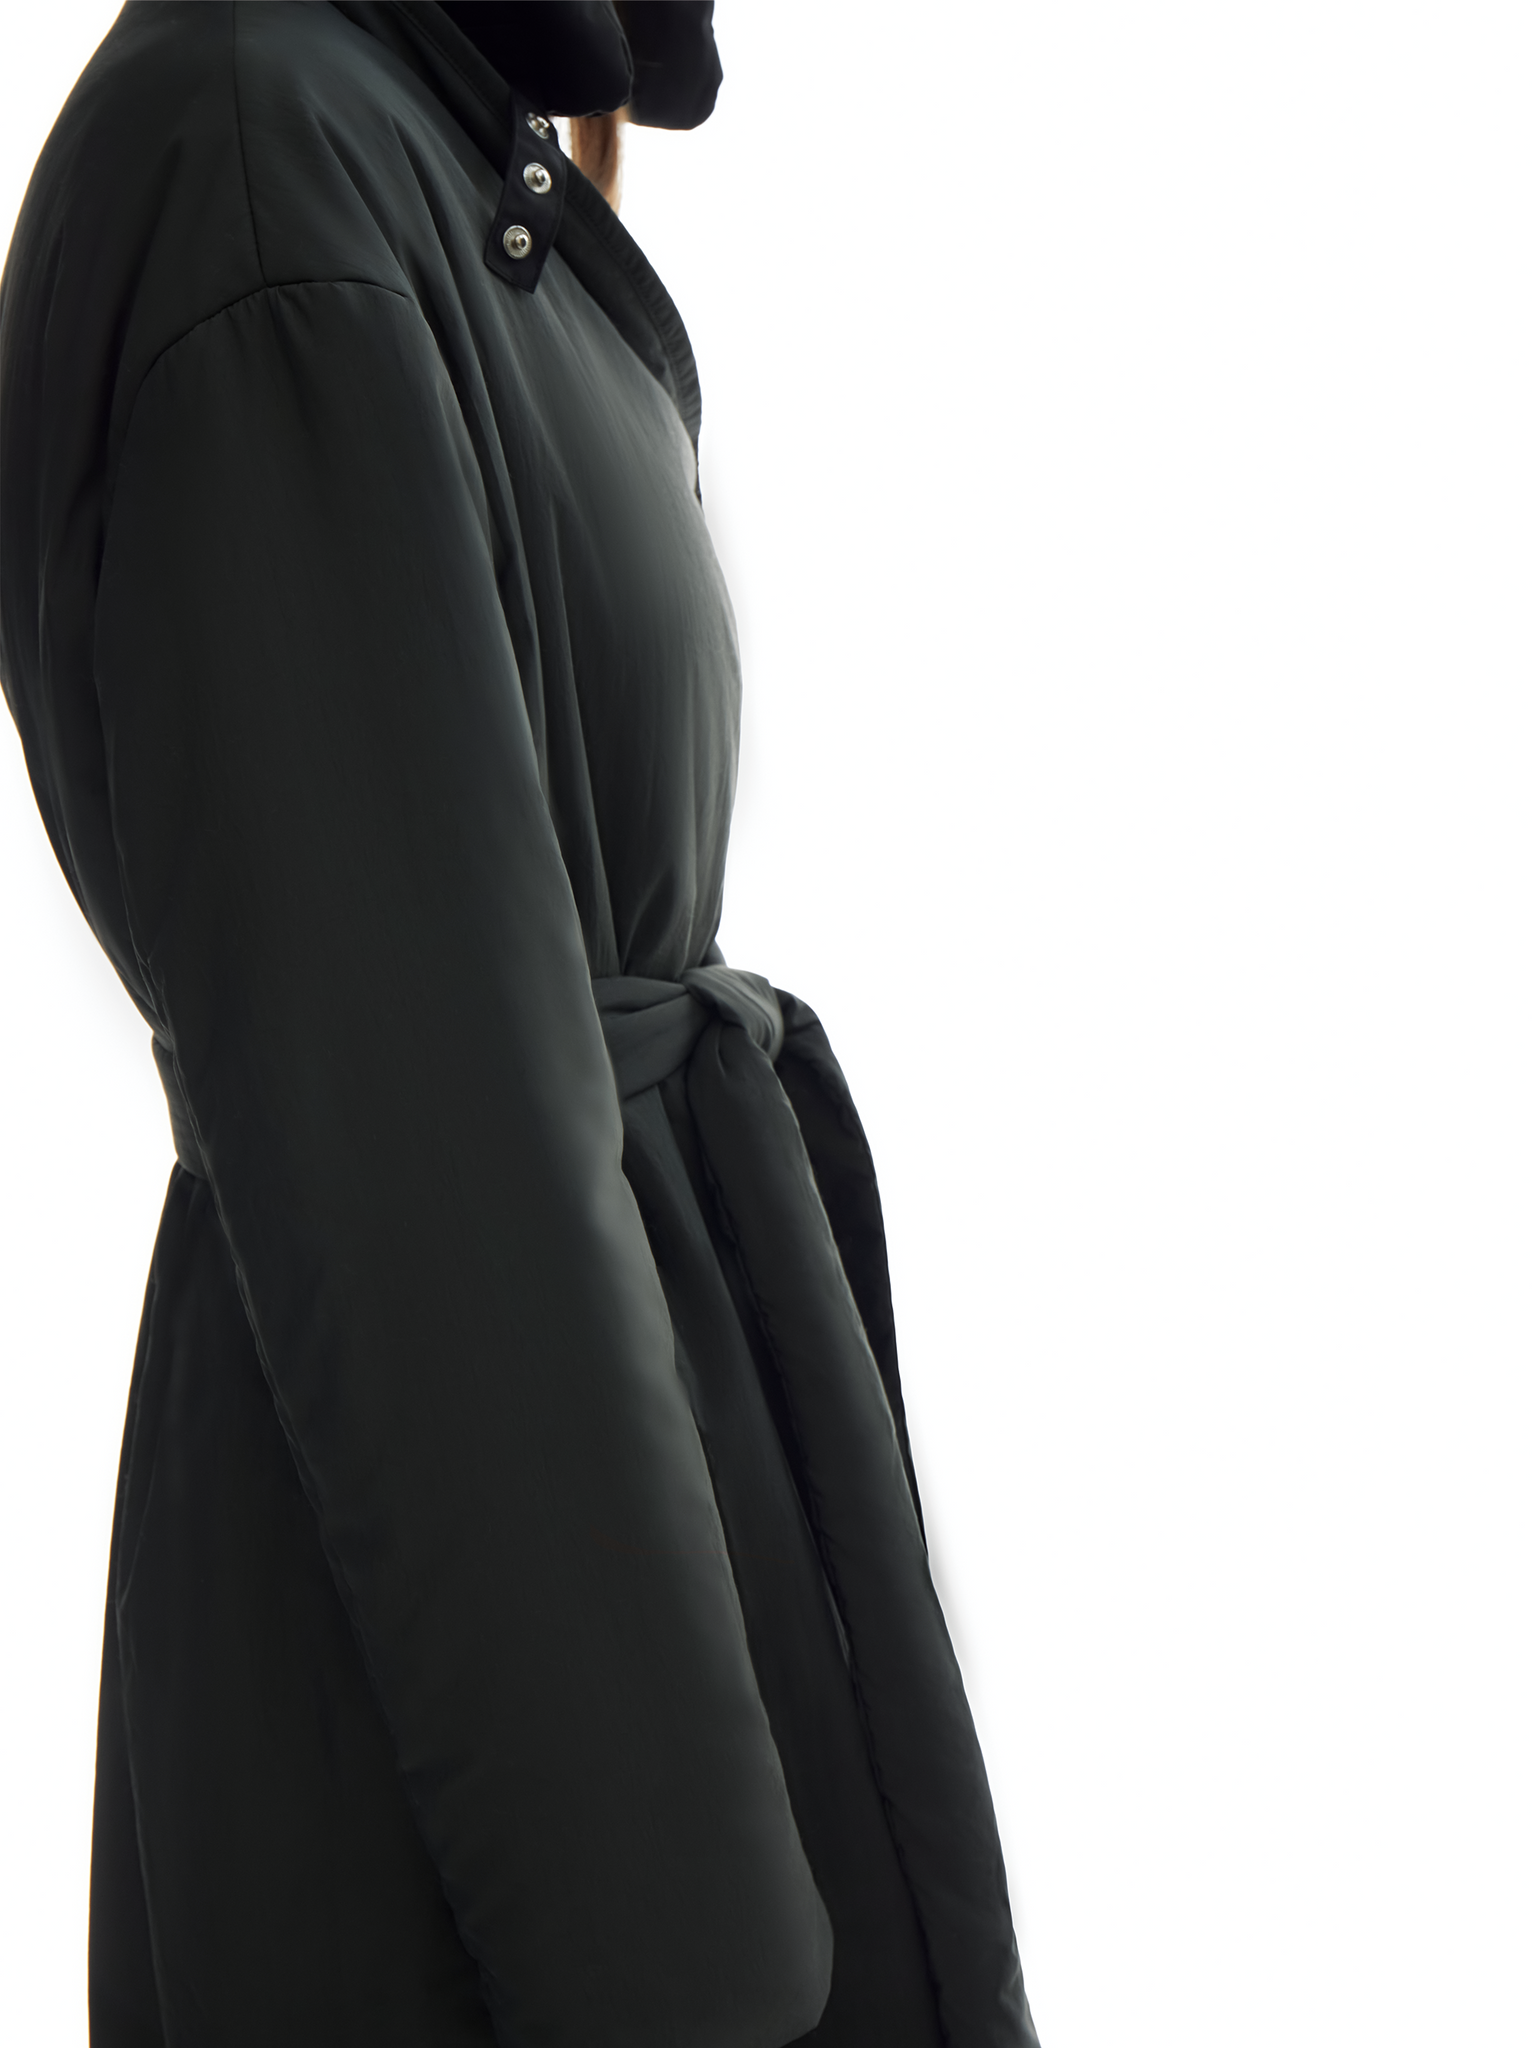 harvey padded coat in black